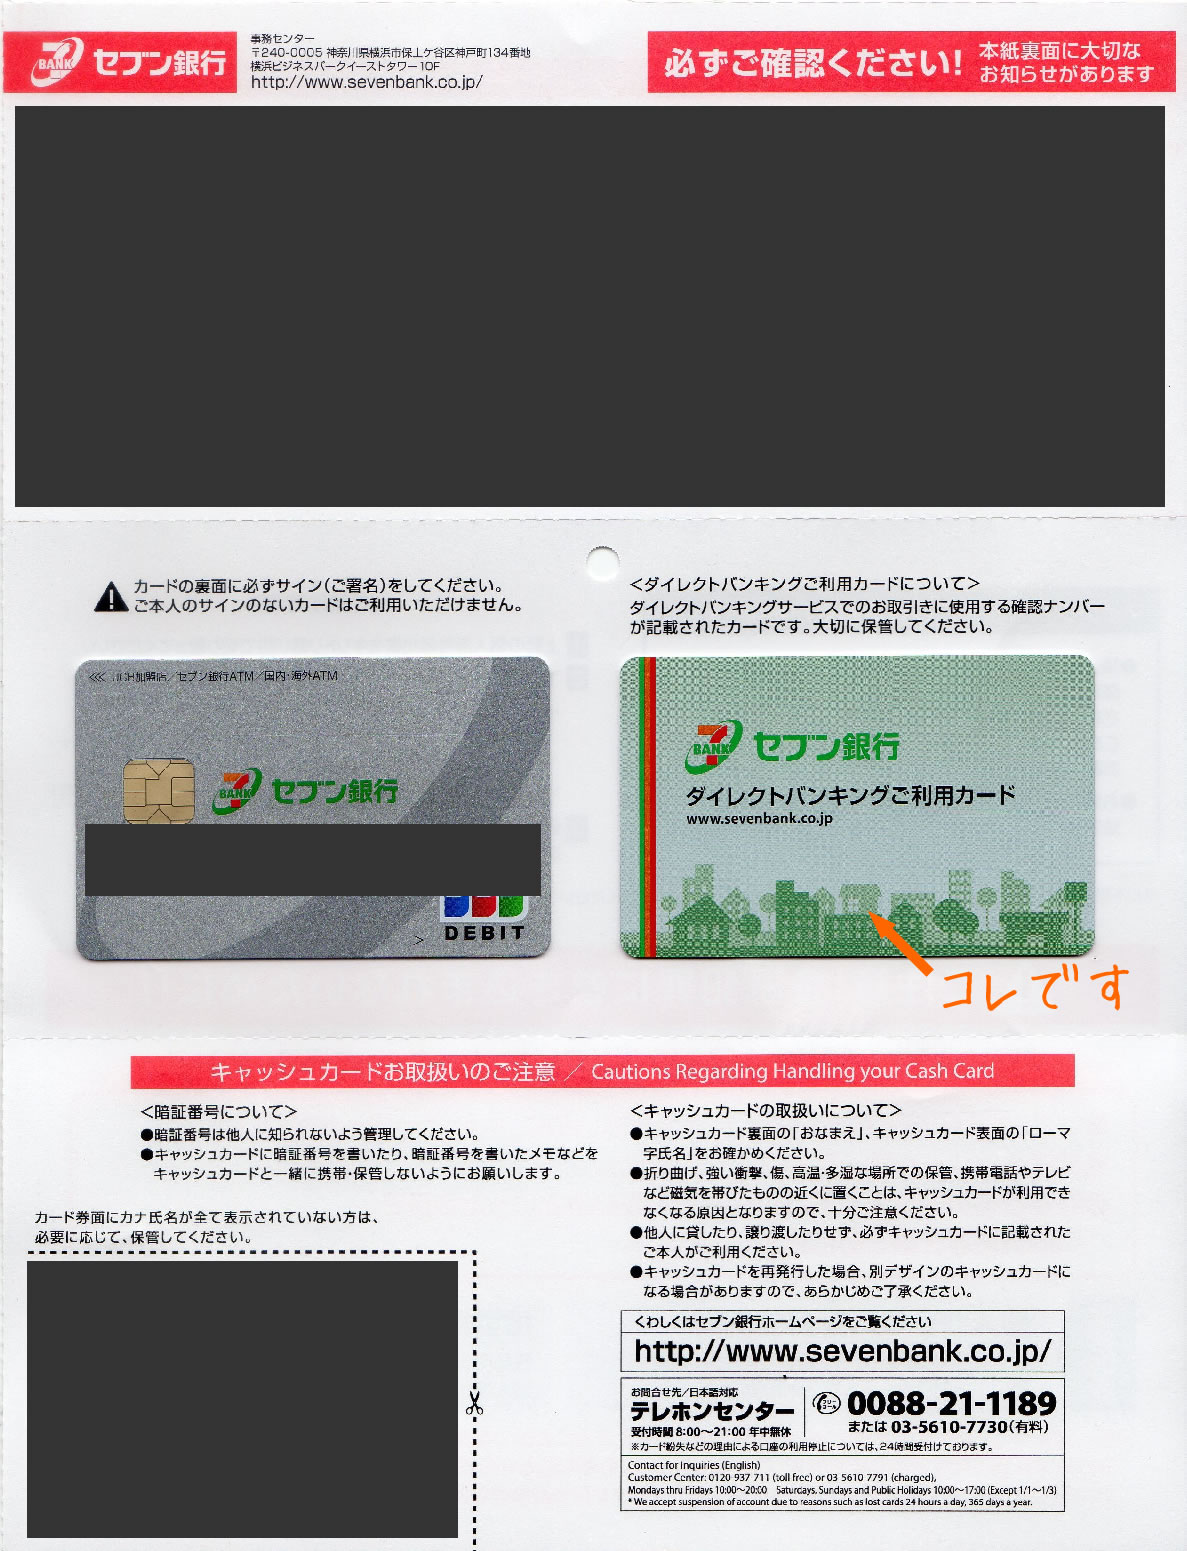 セブン銀行 キャッシュカード ダイレクトバンキングご利用カード